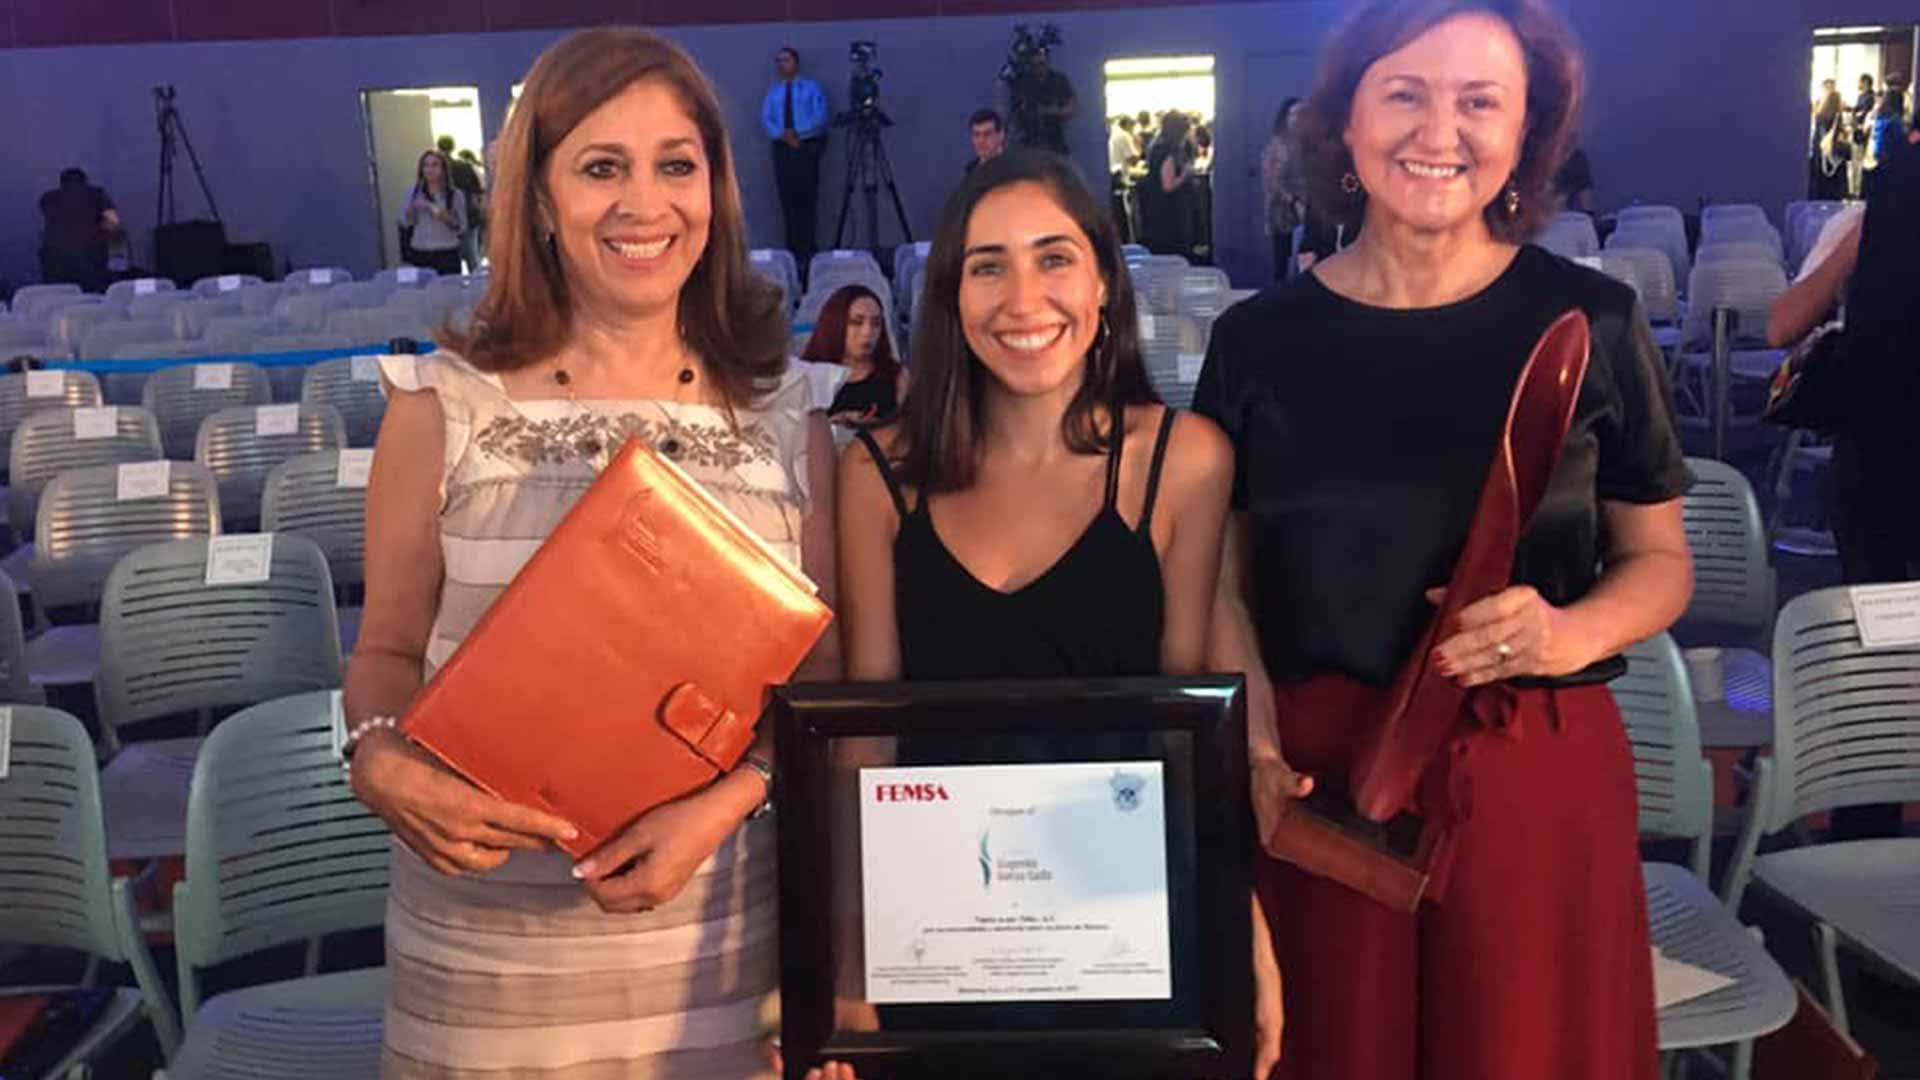 Nutre gana el premio Eugenio Garza Sada en la categoría de Emprendimiento Social